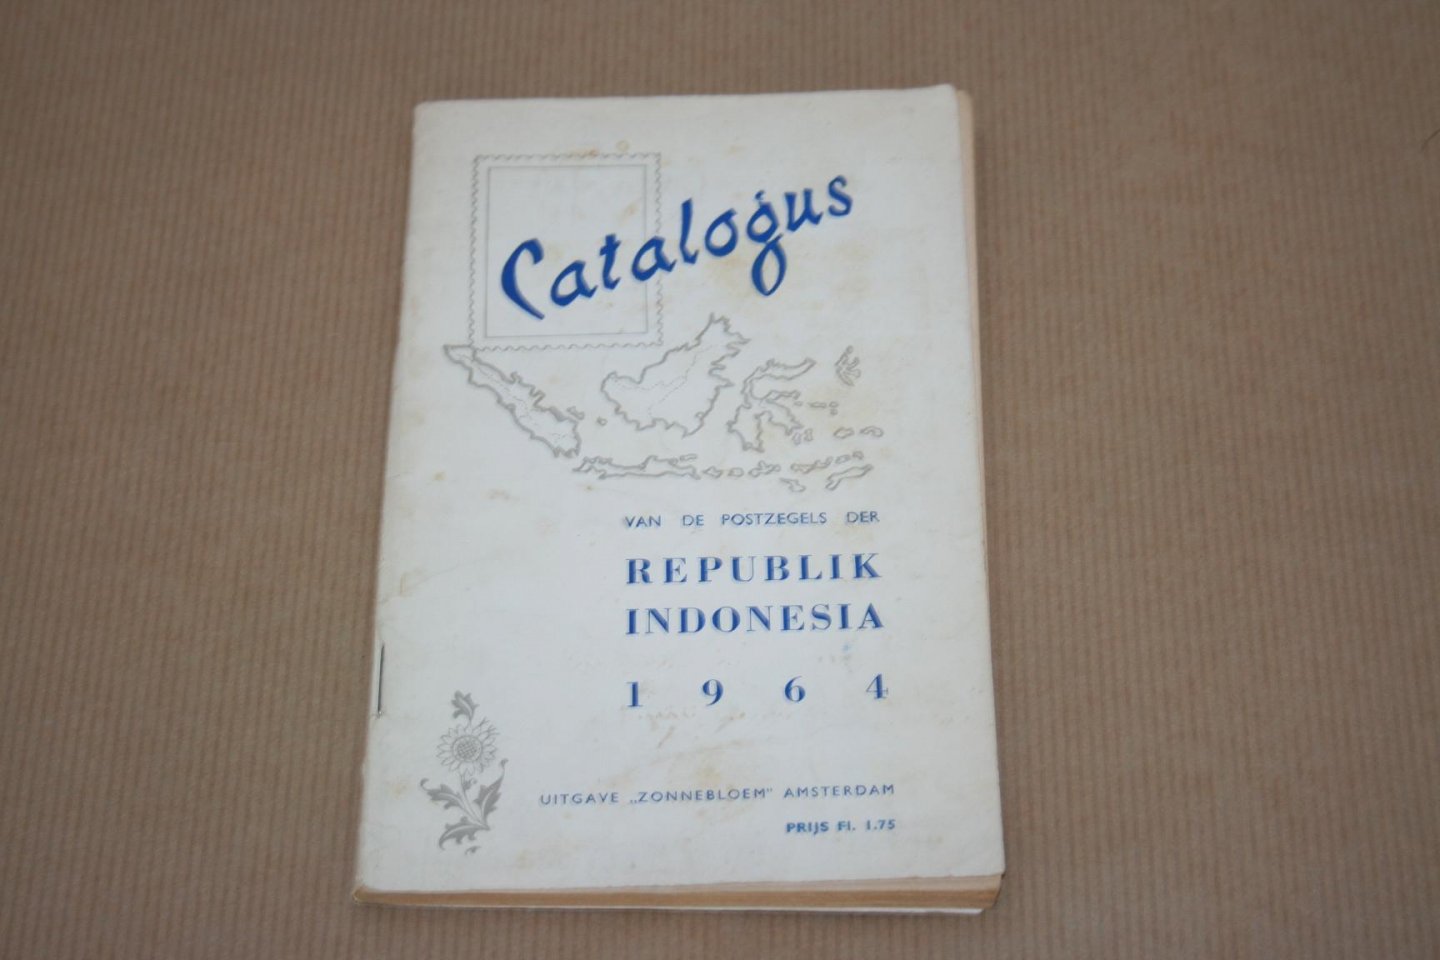  - Catalogus van de  postzegels der Republik Indonesia - 1964